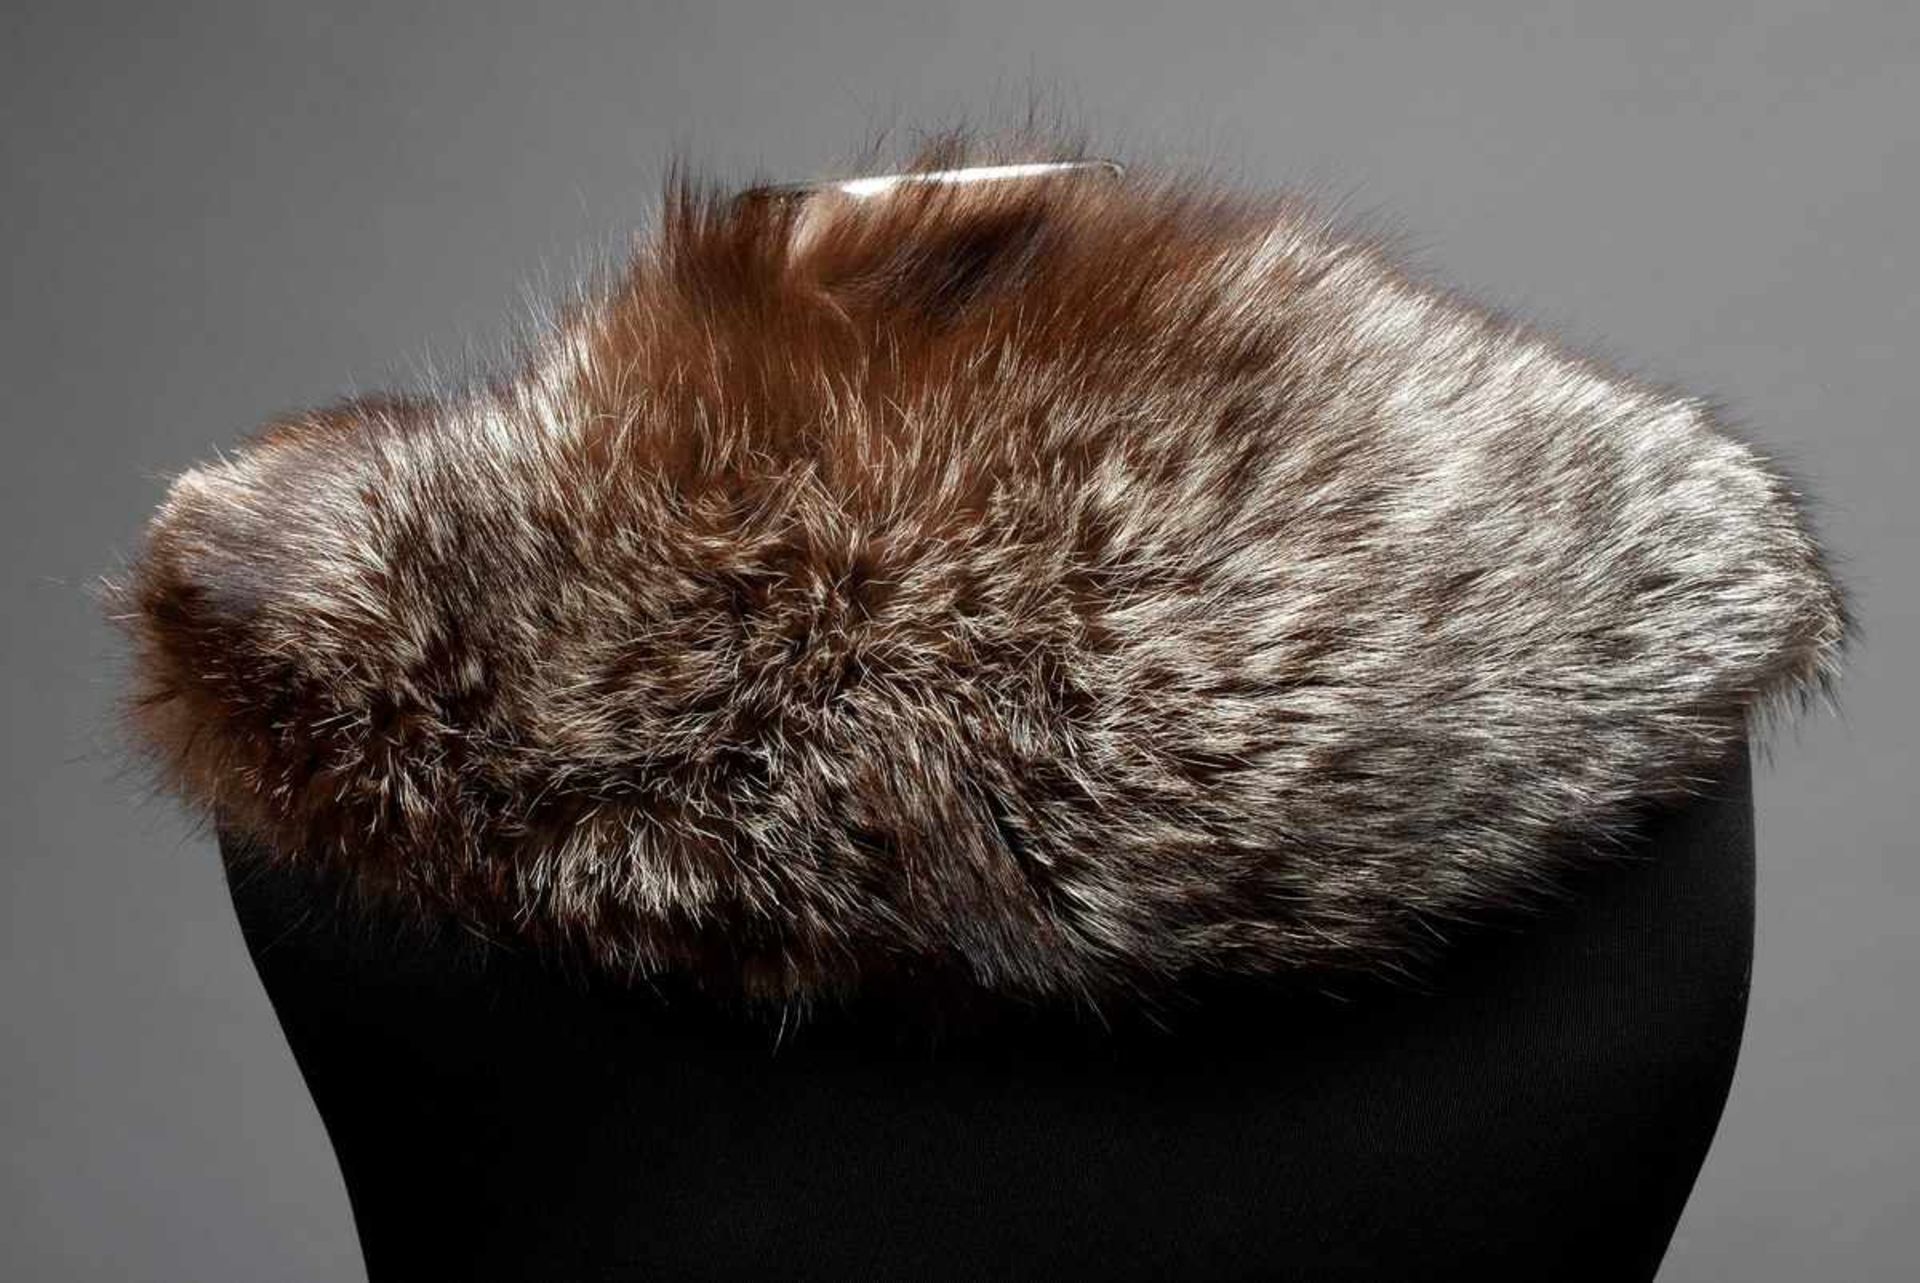 Silberfuchs Kostümkragen, gefüttertSilver fox collar for woman's suit- - -16.00 % buyer's premium on - Image 2 of 2